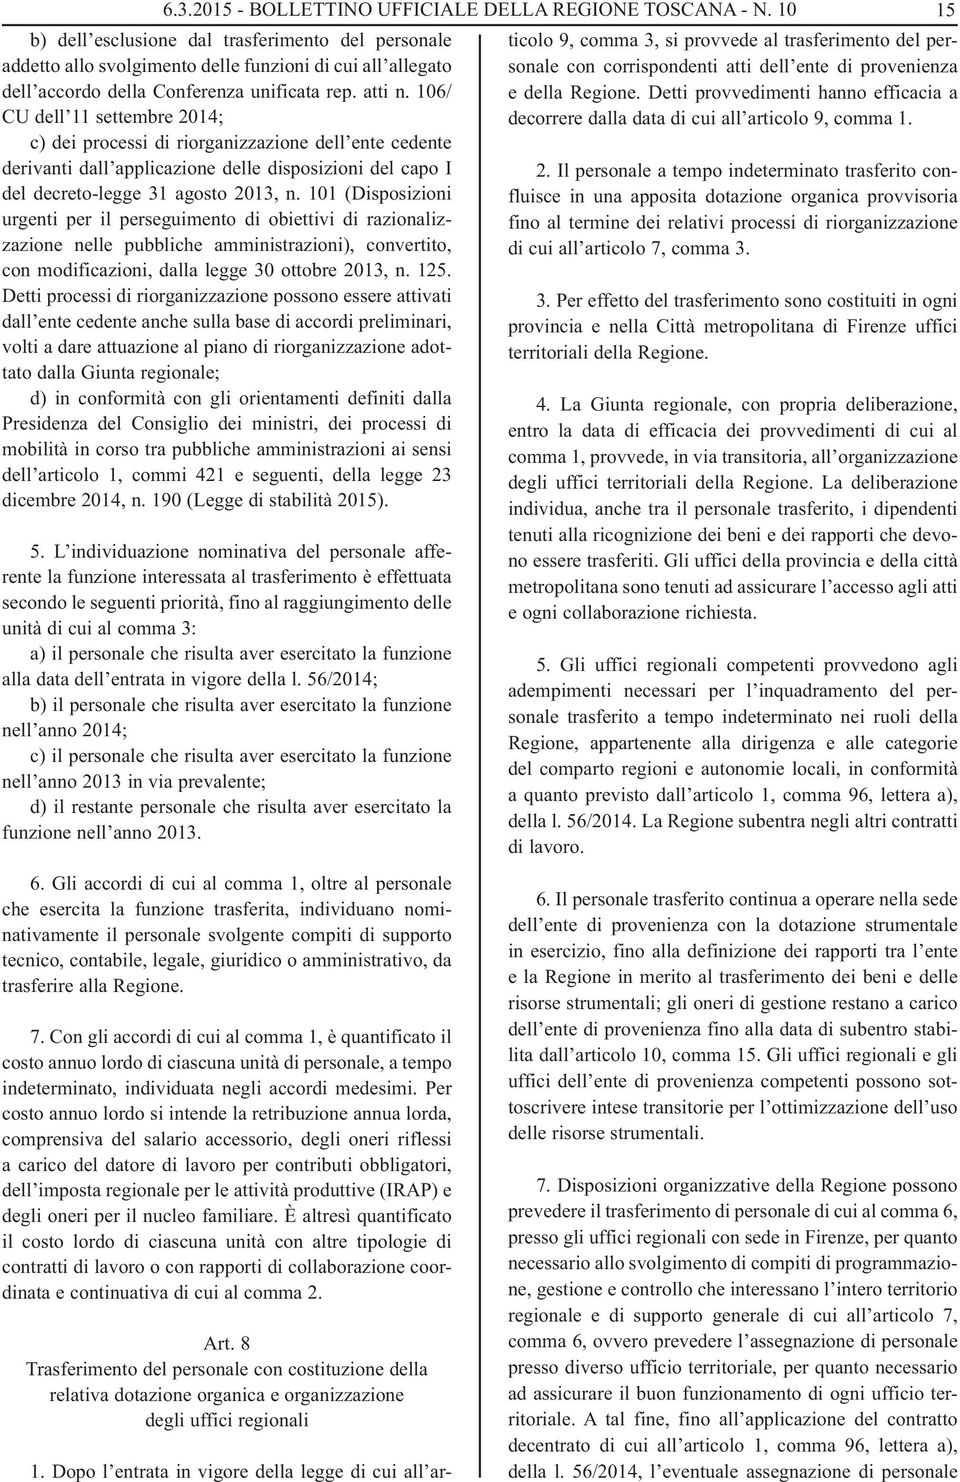 106/ CU dell 11 settembre 2014; c) dei processi di riorganizzazione dell ente cedente derivanti dall applicazione delle disposizioni del capo I del decreto-legge 31 agosto 2013, n.